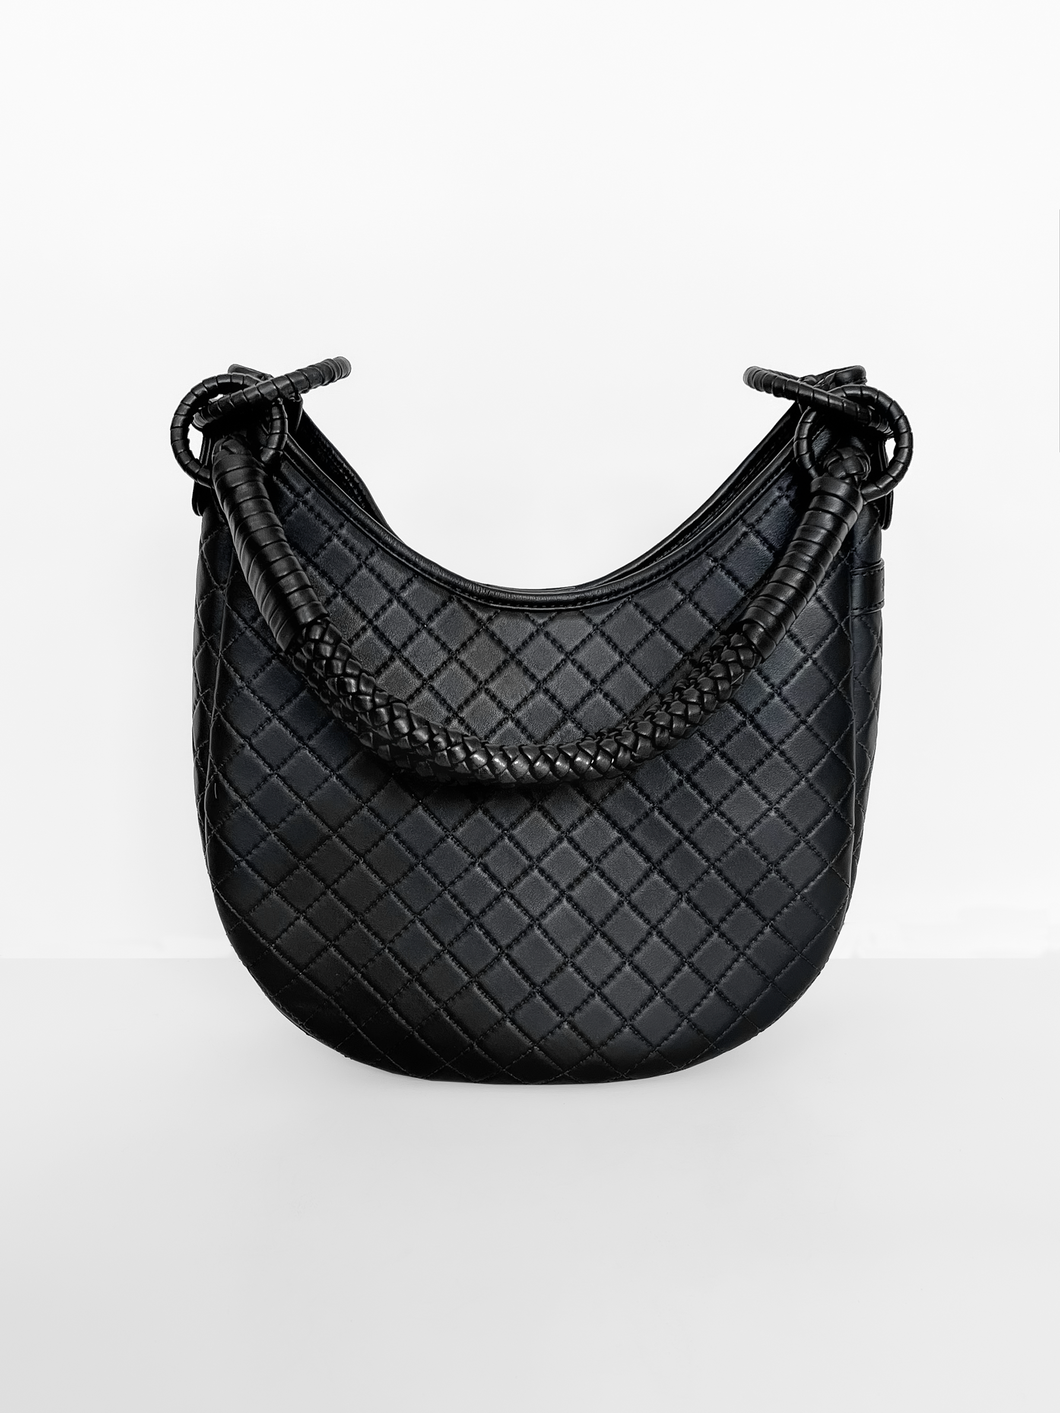 Saddle shoulder bag, hobo,  calf leather luxury designer piece